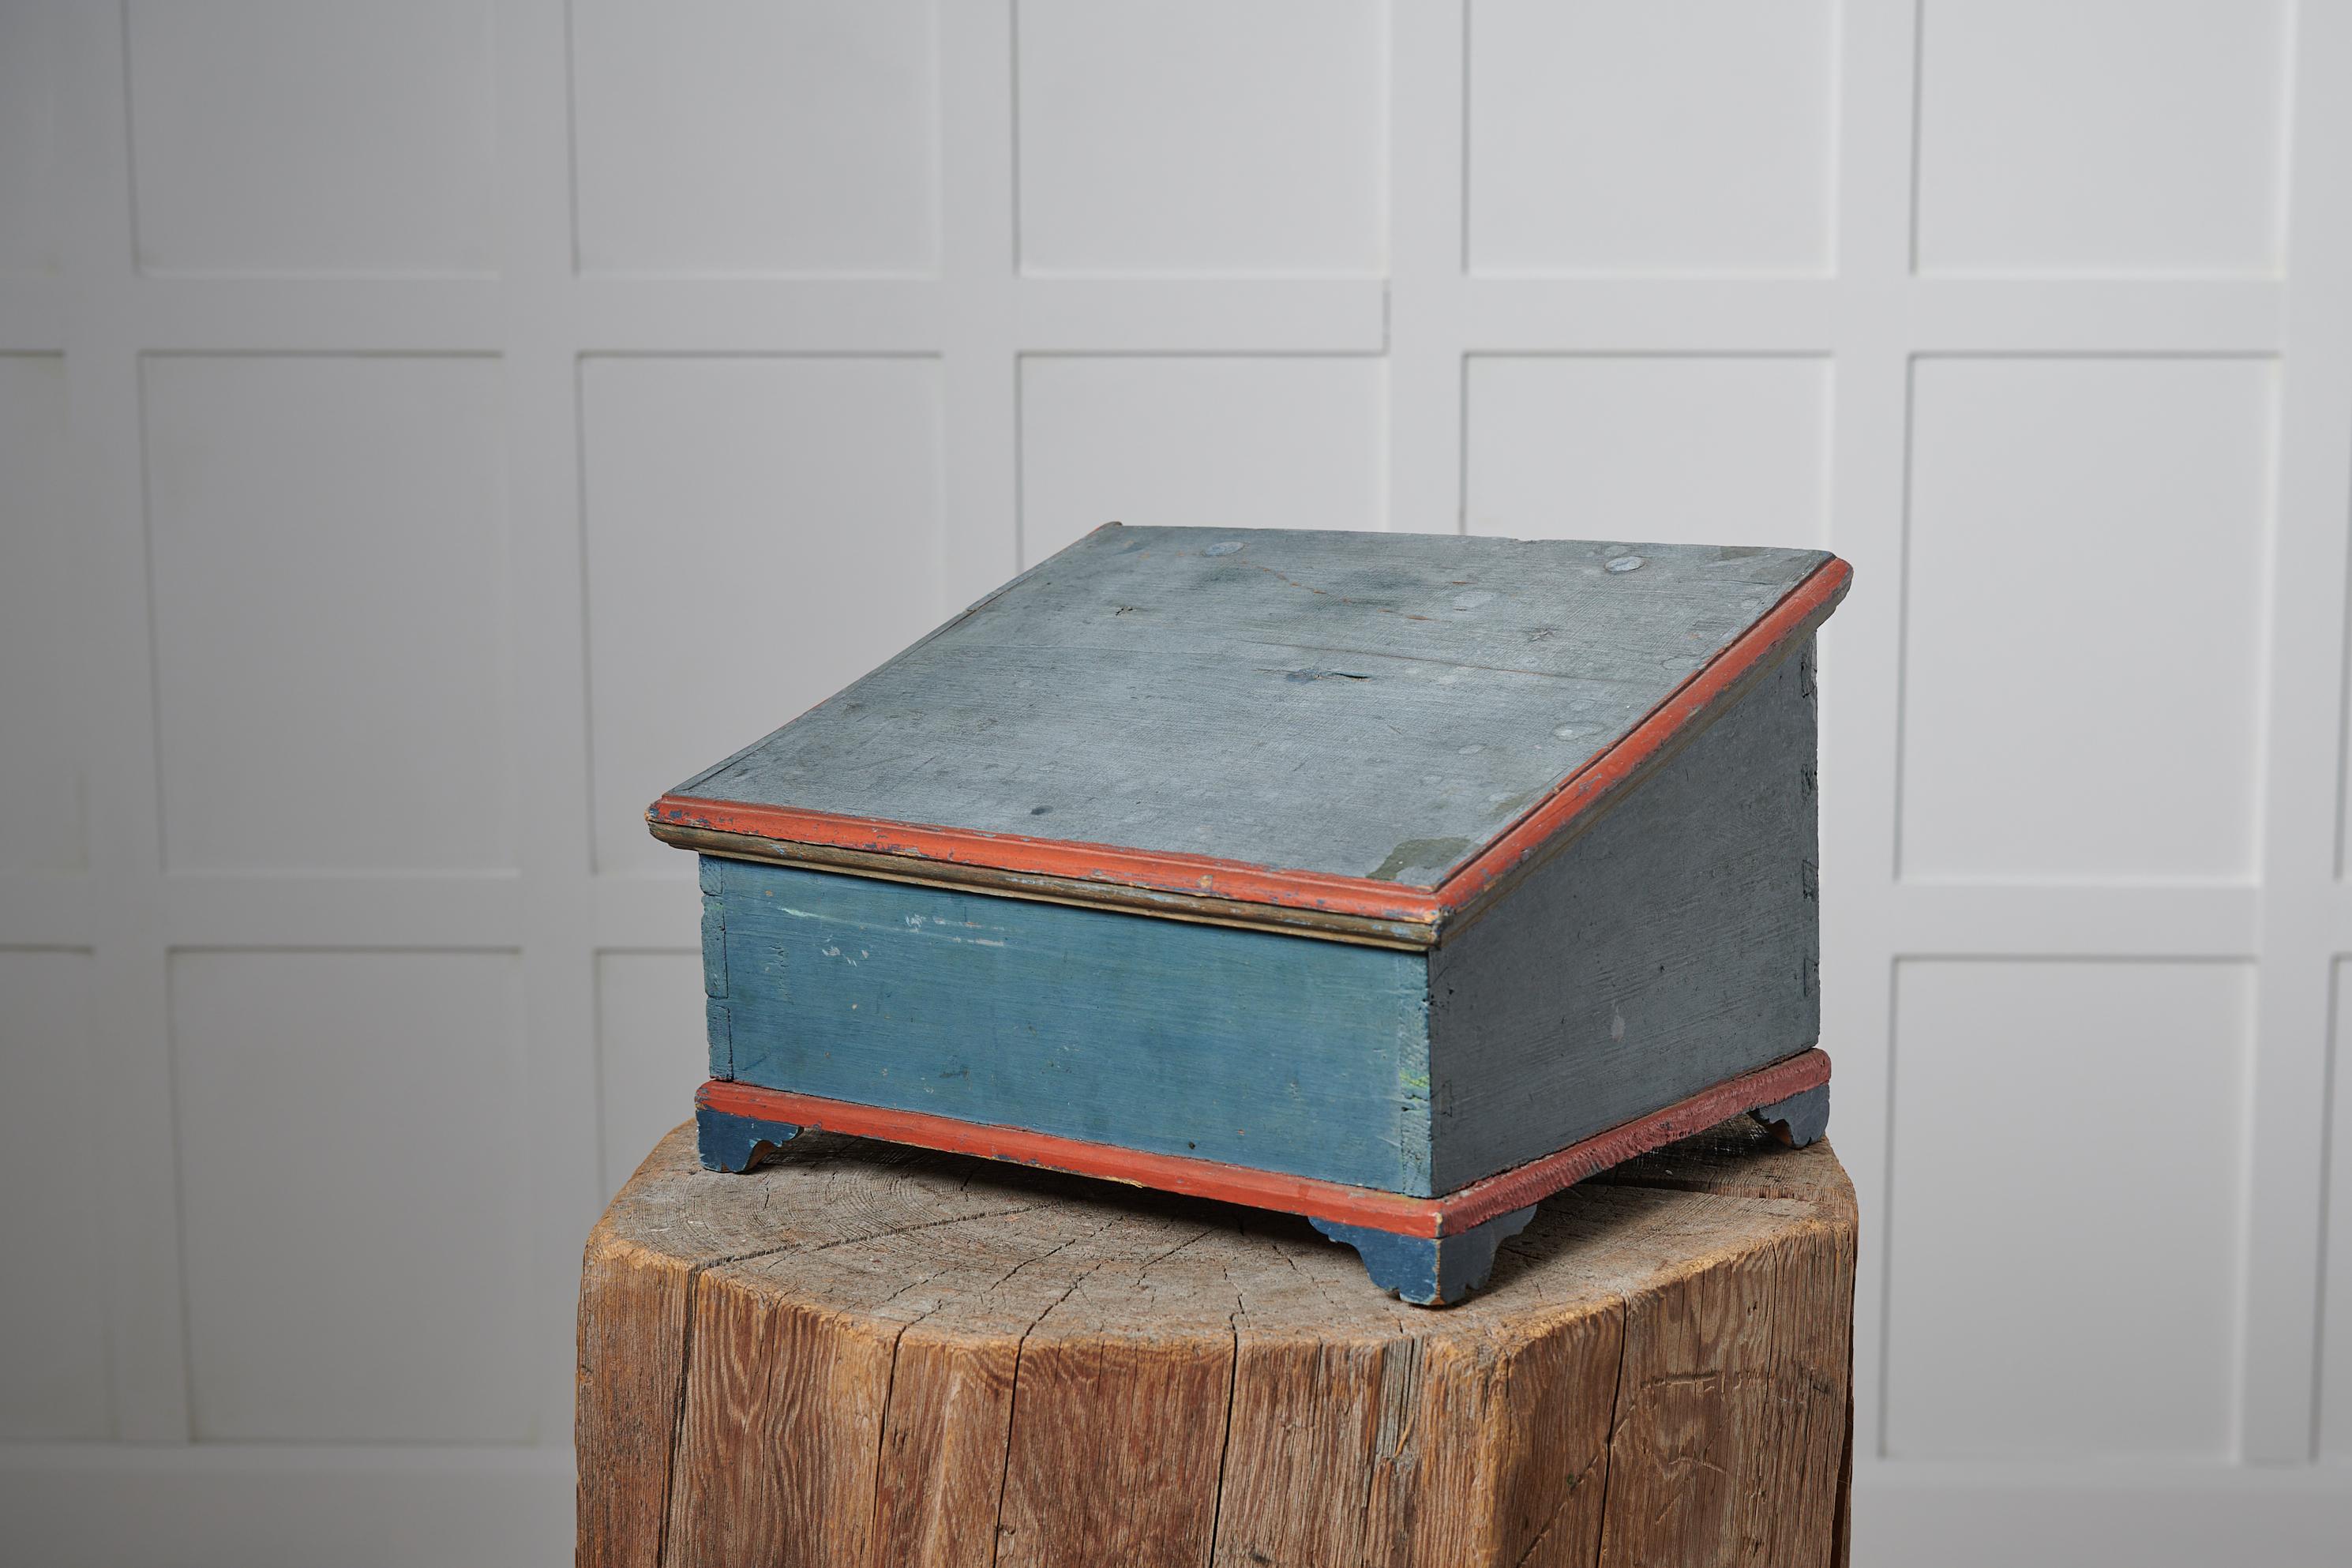 Seltene antike blaue Schachtel in Volkskunst aus Schweden aus der Mitte des 19. Jahrhunderts. Die Box hat eine attraktive Größe und kann für alles verwendet werden, von der Aufbewahrung von Dokumenten und Schreibwaren bis hin zu Parfüm und Schmuck.